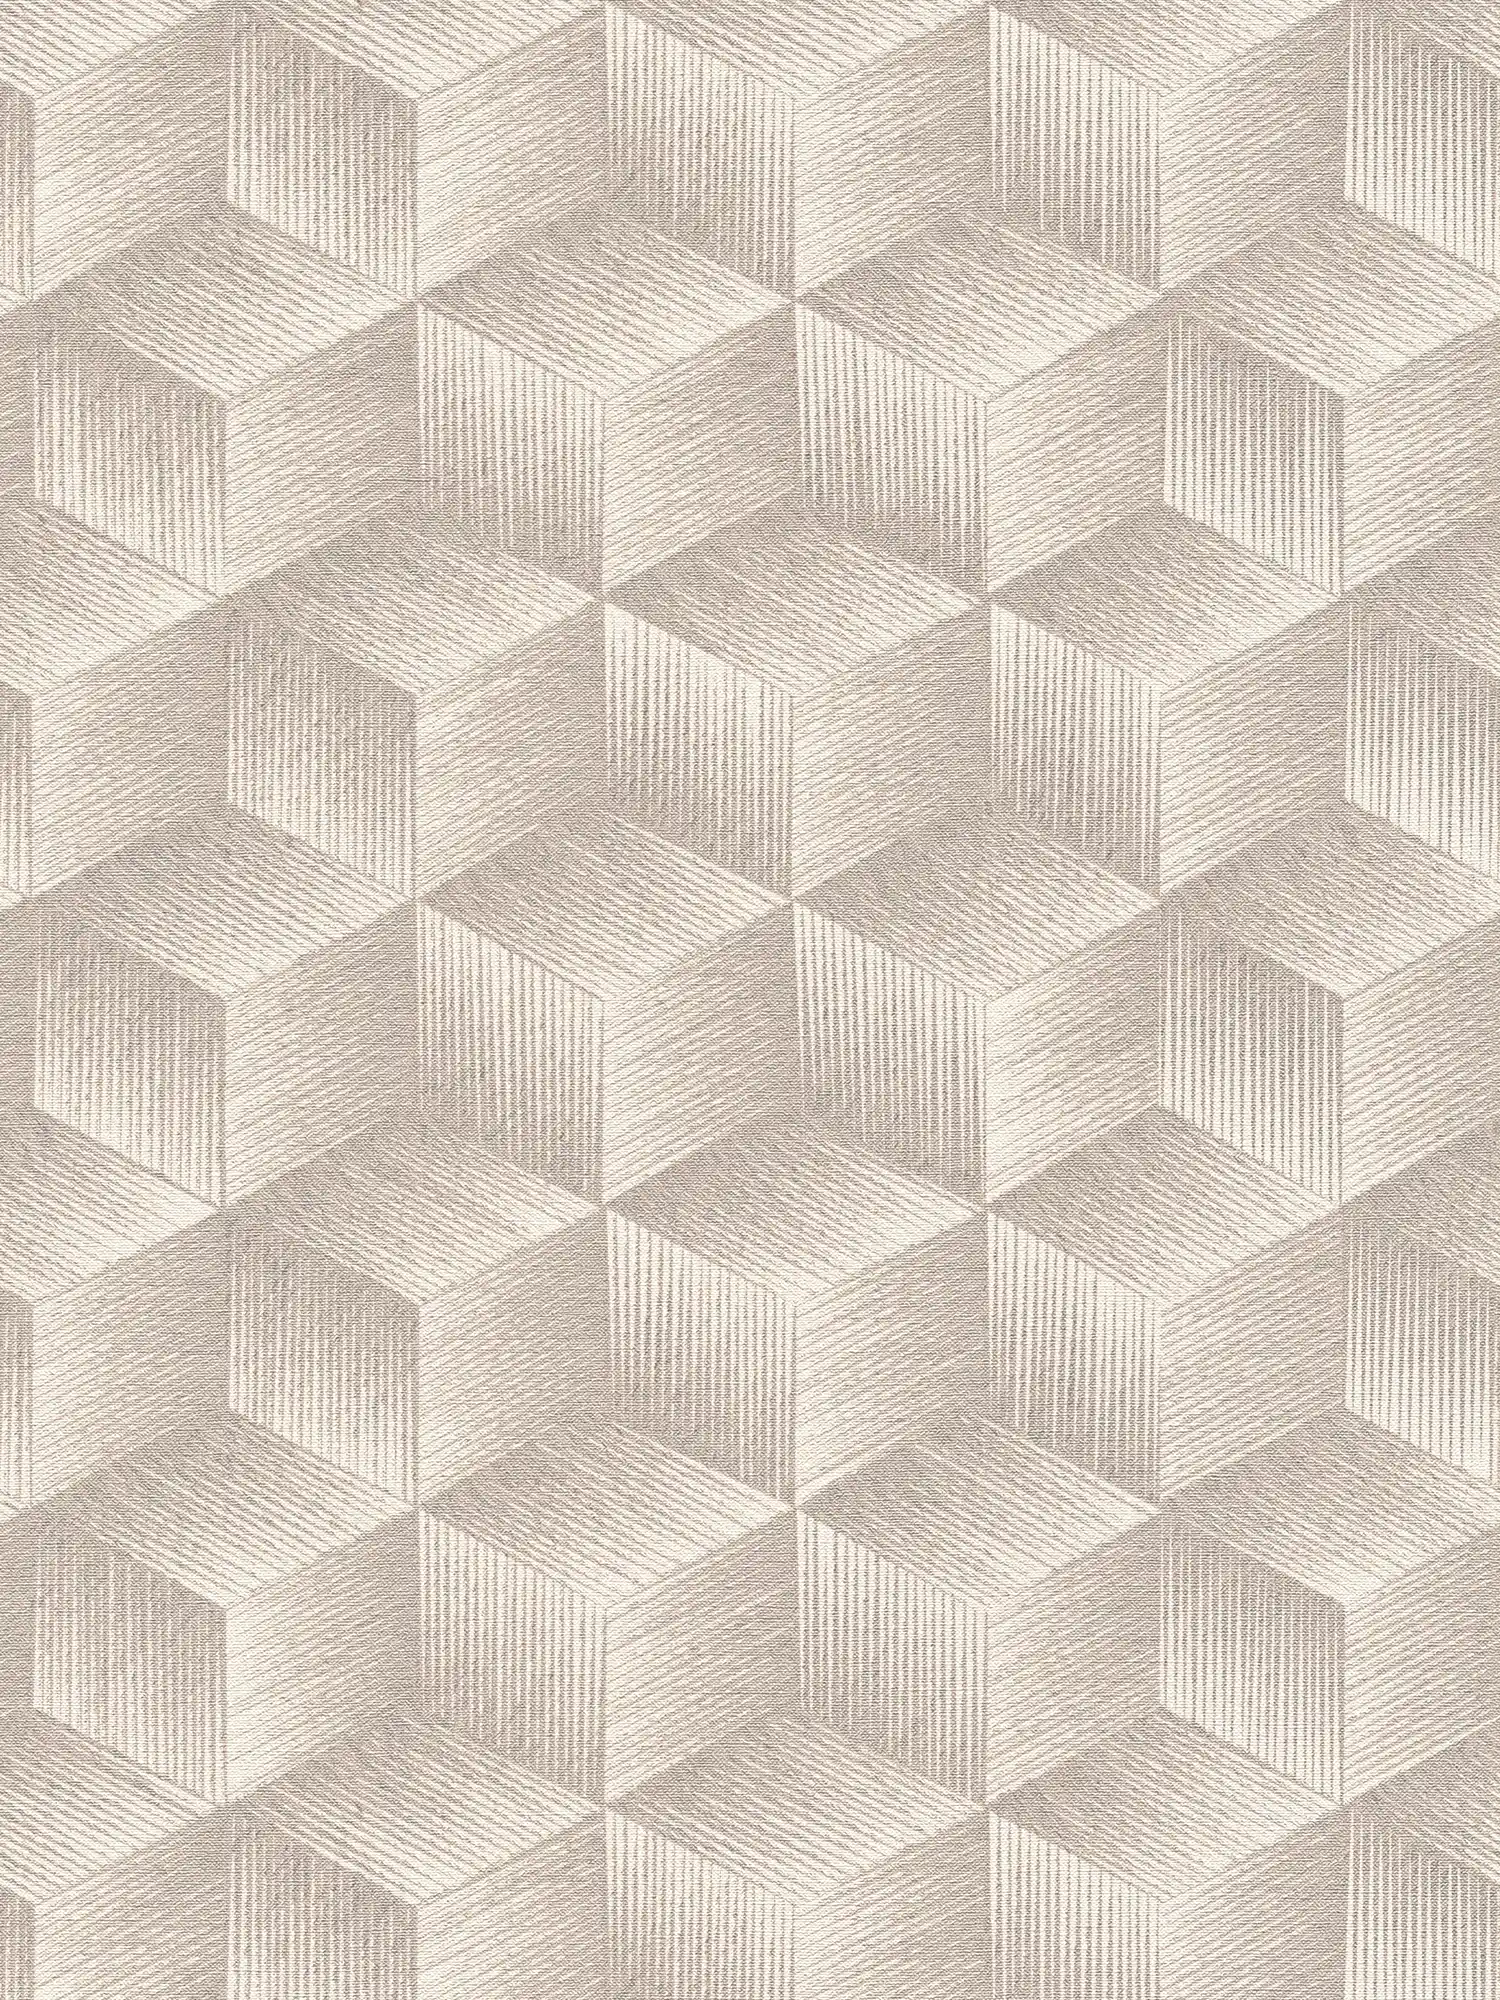 Papel pintado tejido-no tejido con efecto 3D y diseño cuadrado Sin PVC - gris, grisáceo, blanco
